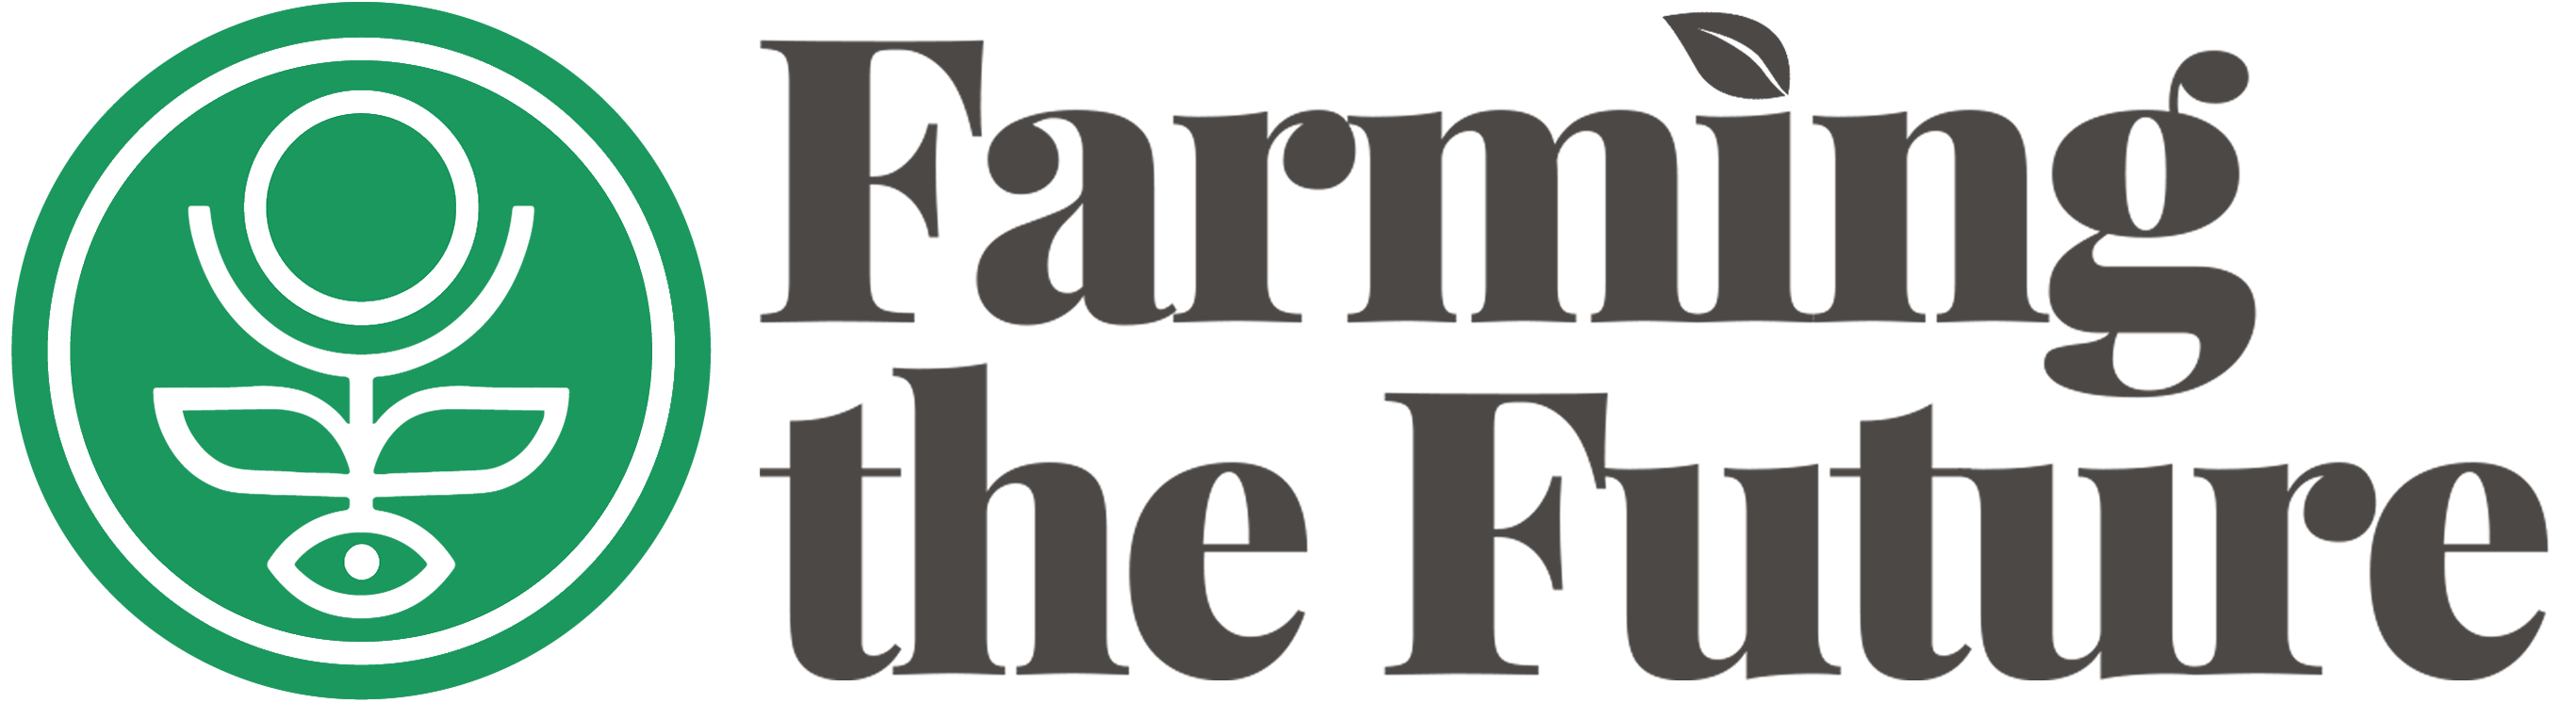 Farming the future logo